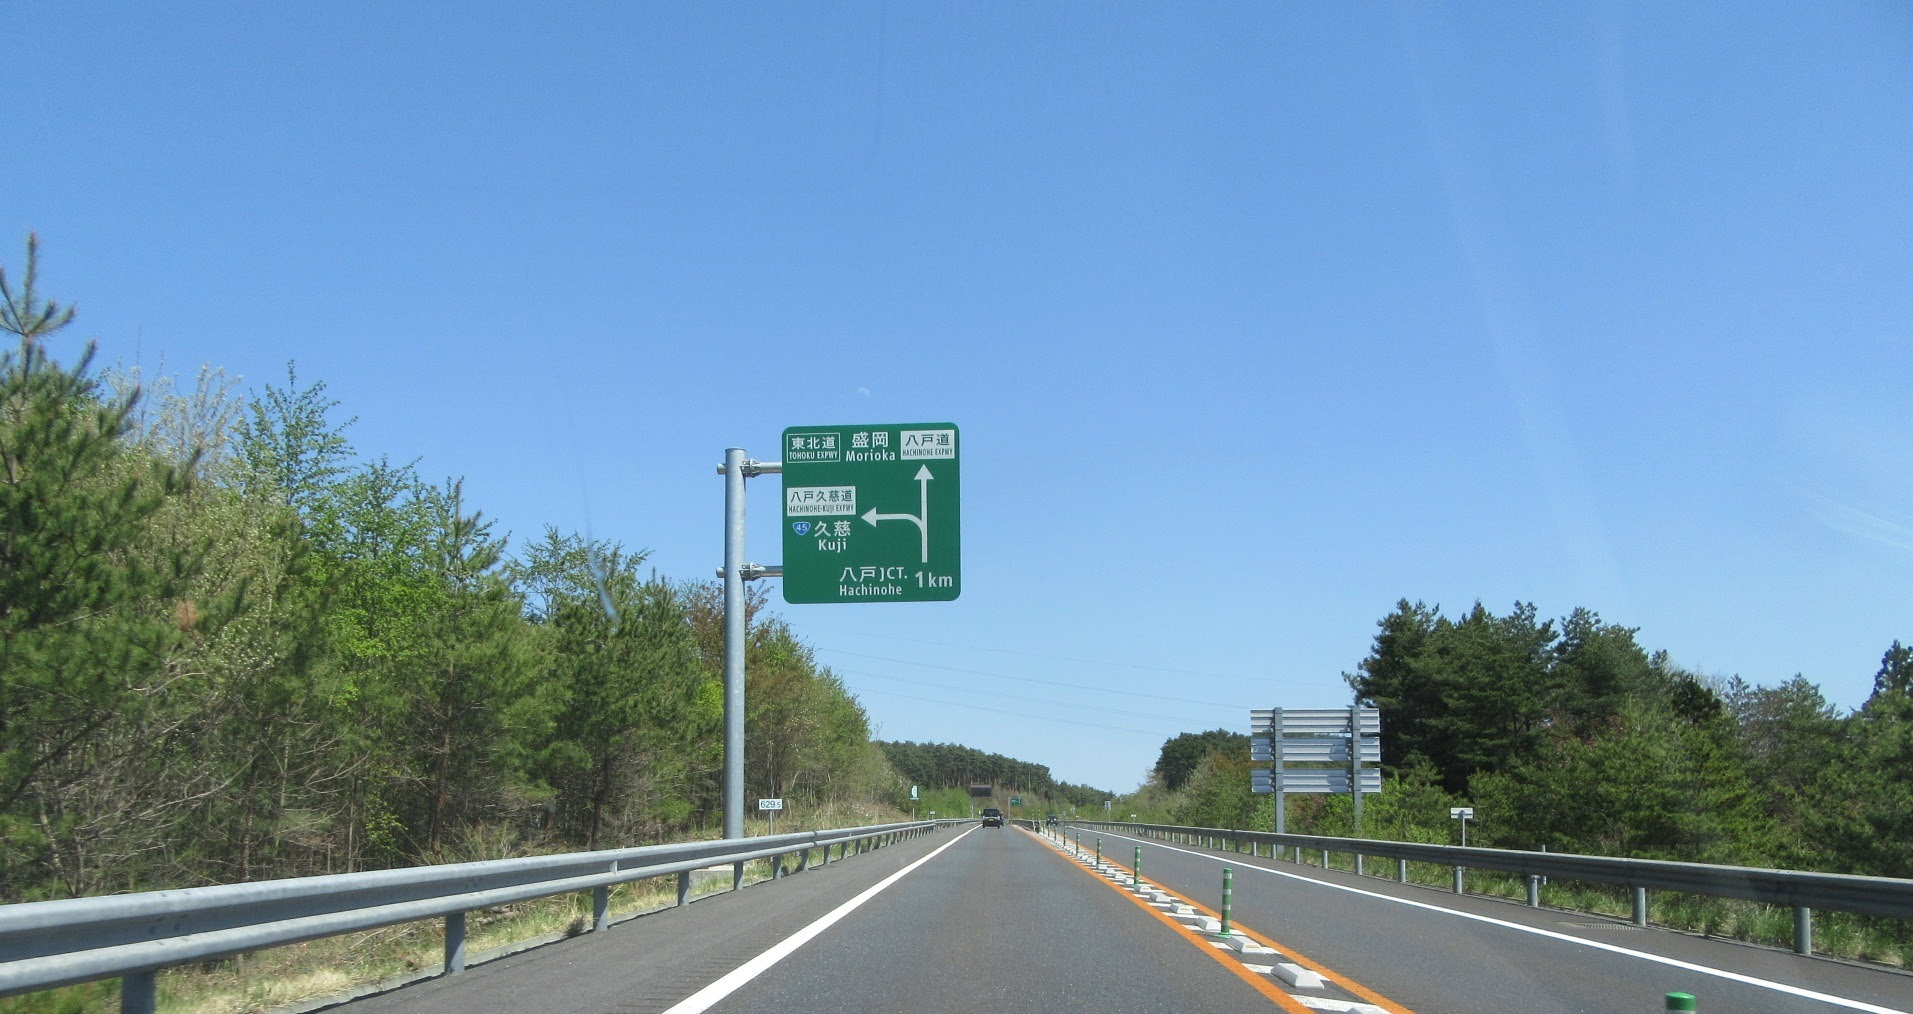 輪島道路 (石川県道)